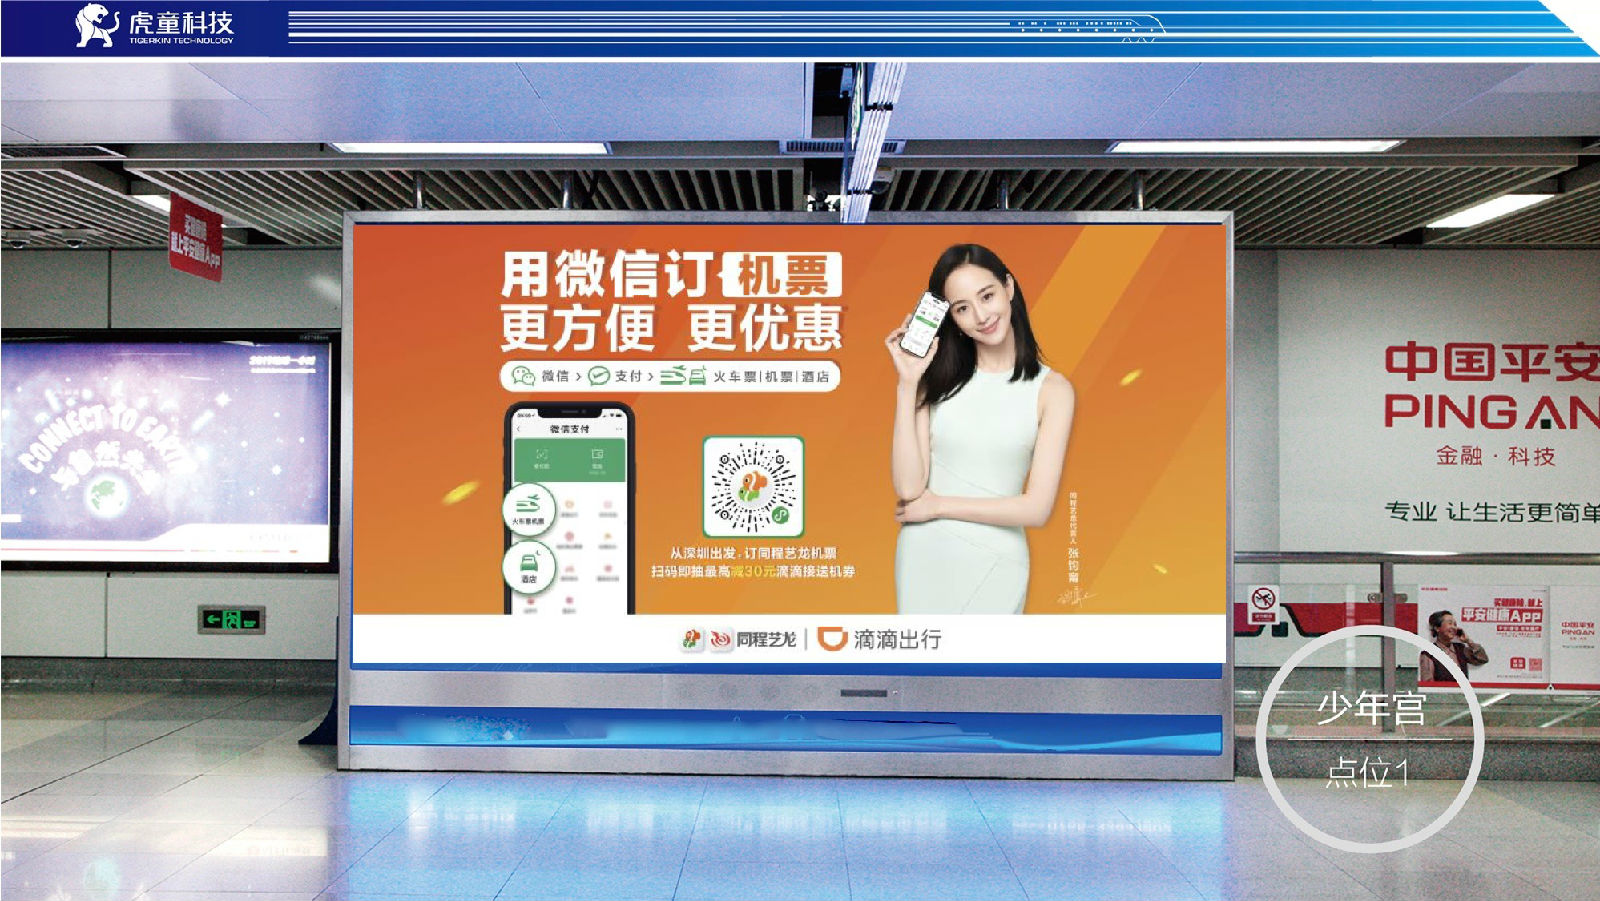 选择深圳地铁广告公司的好处有哪些